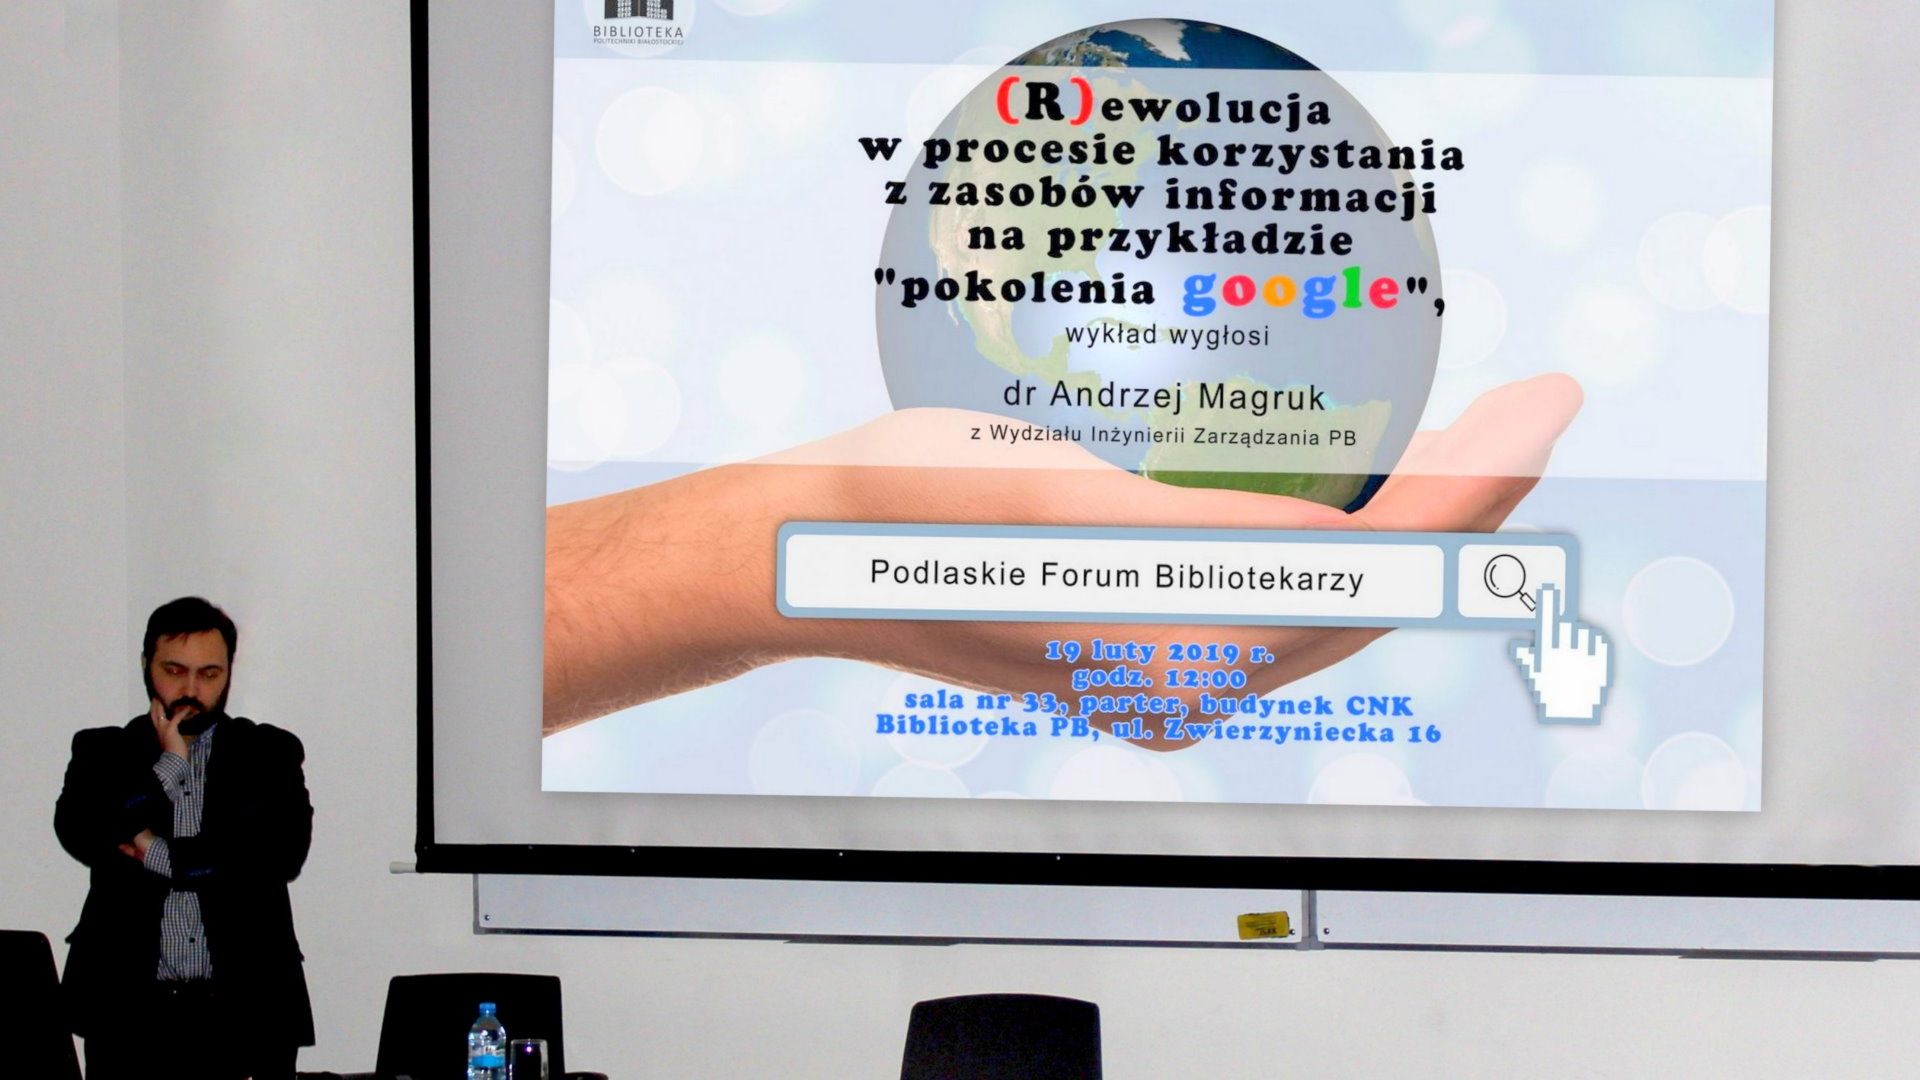 Mężczyzna w czarnej marynarce stoi przy ekranie projekcyjnym. Na slajdzie logo Biblioteki Politechniki Białostockiej, tytuł i autor prezentacji oraz data, godzina i miejsce spotkania.